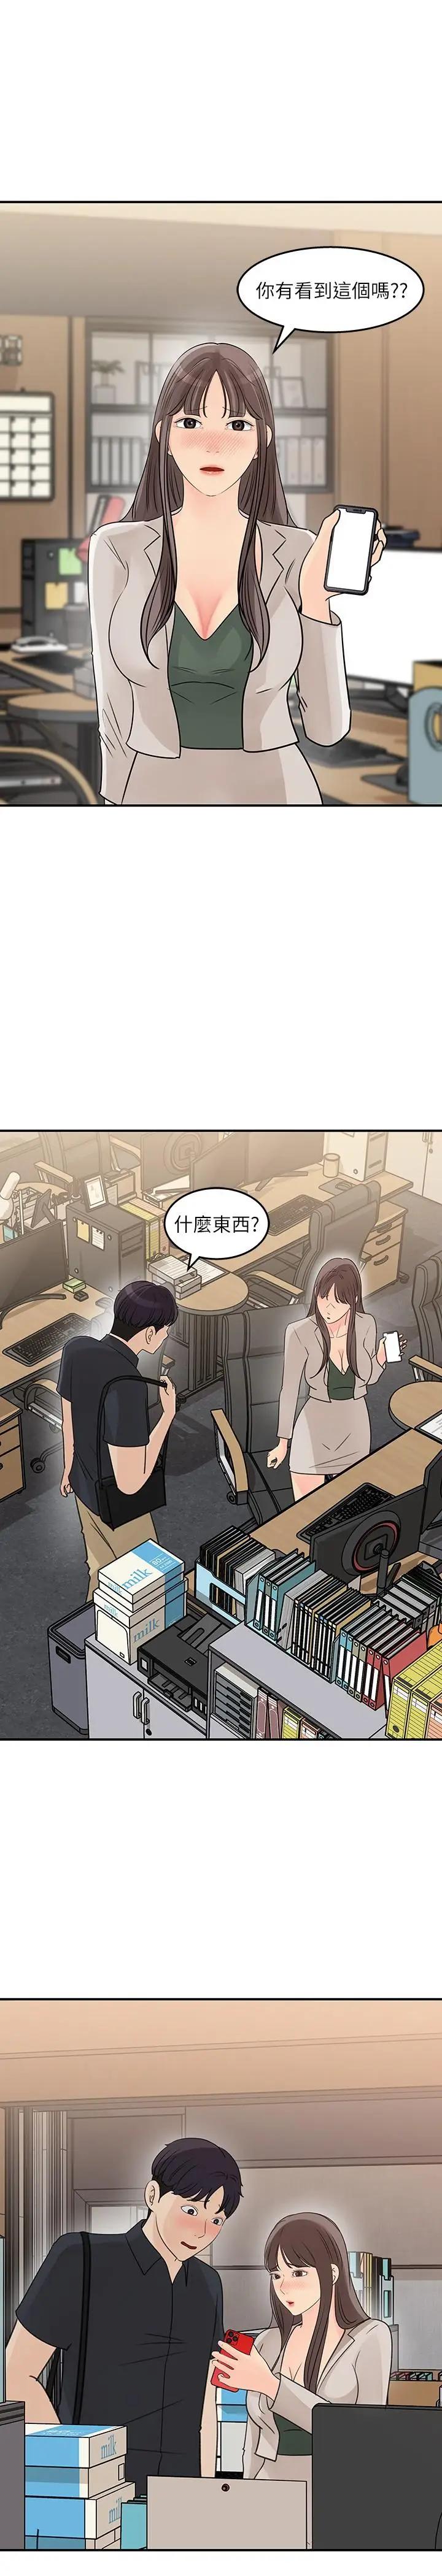 韩国污漫画 女神收藏清單 第28话让人更心痒的办公室暧昧 3